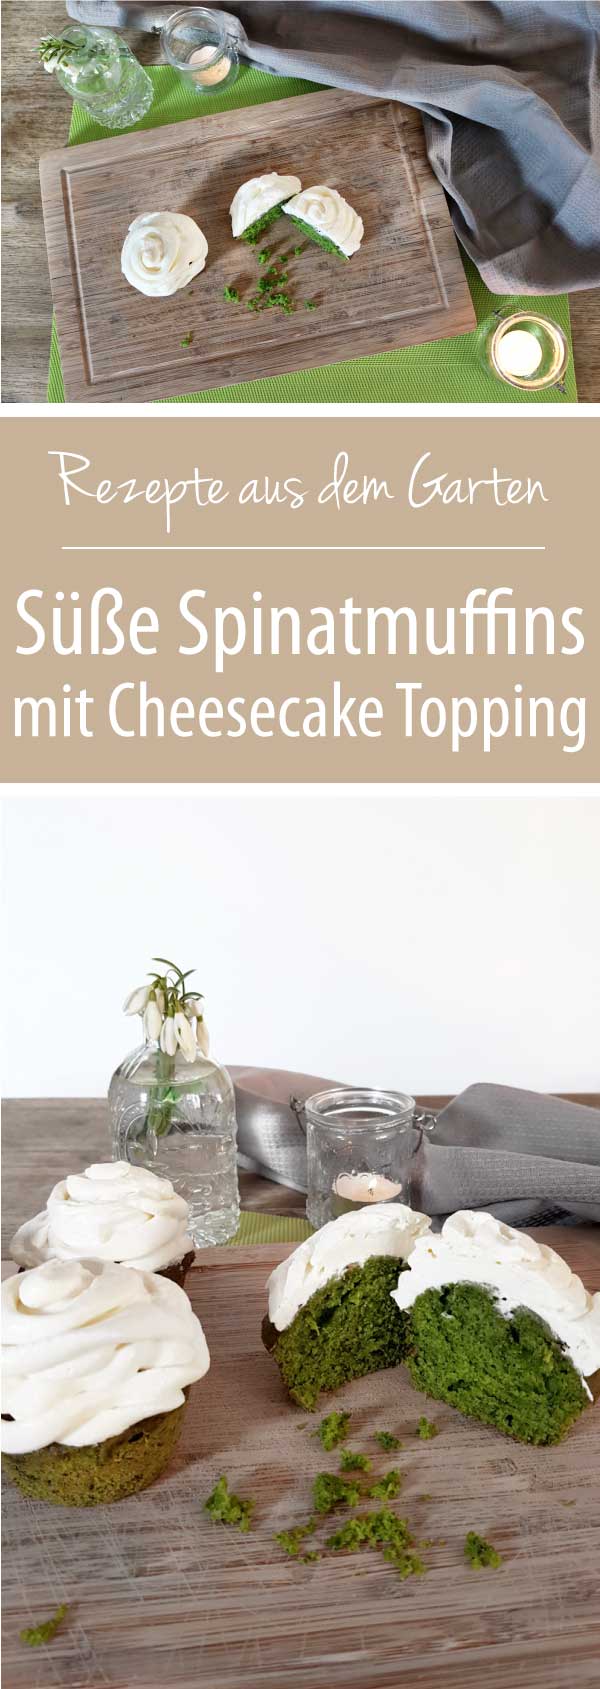 Süße Spinatmuffins mit Cheesecake Topping - Rezepte aus dem Garten